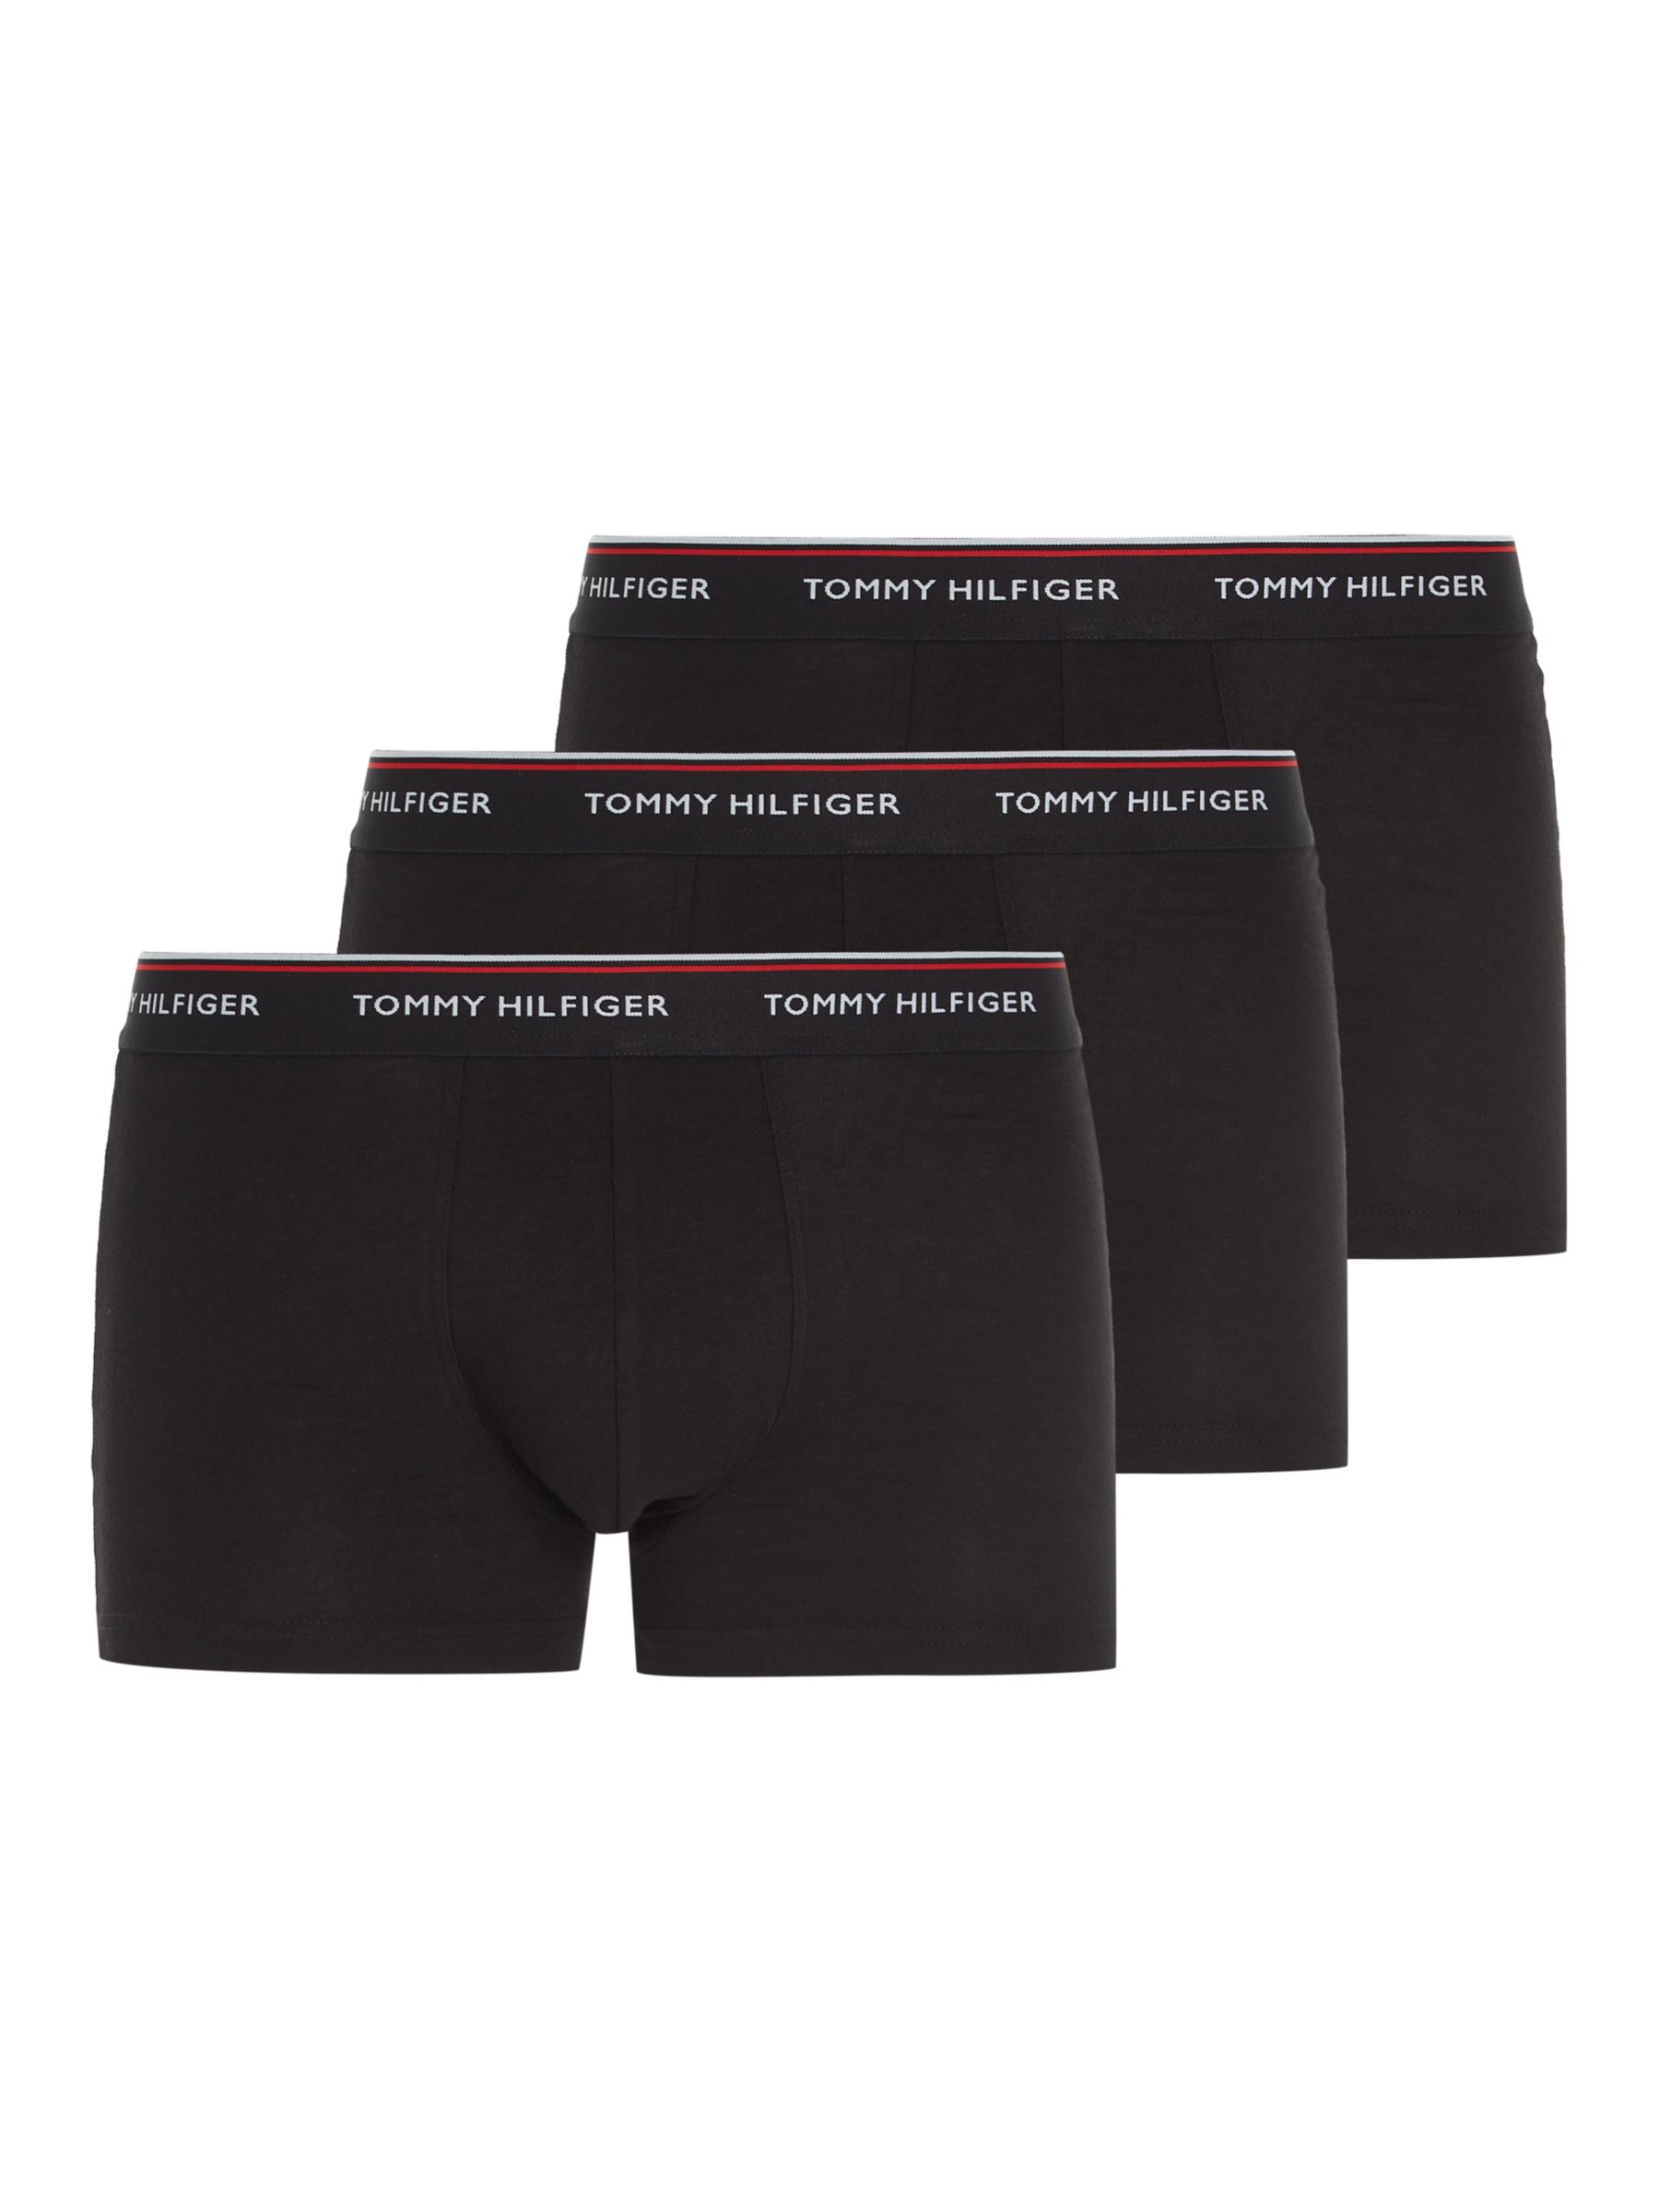 Tommy Hilfiger Essential Cotton Boxer Briefs - Black - Red